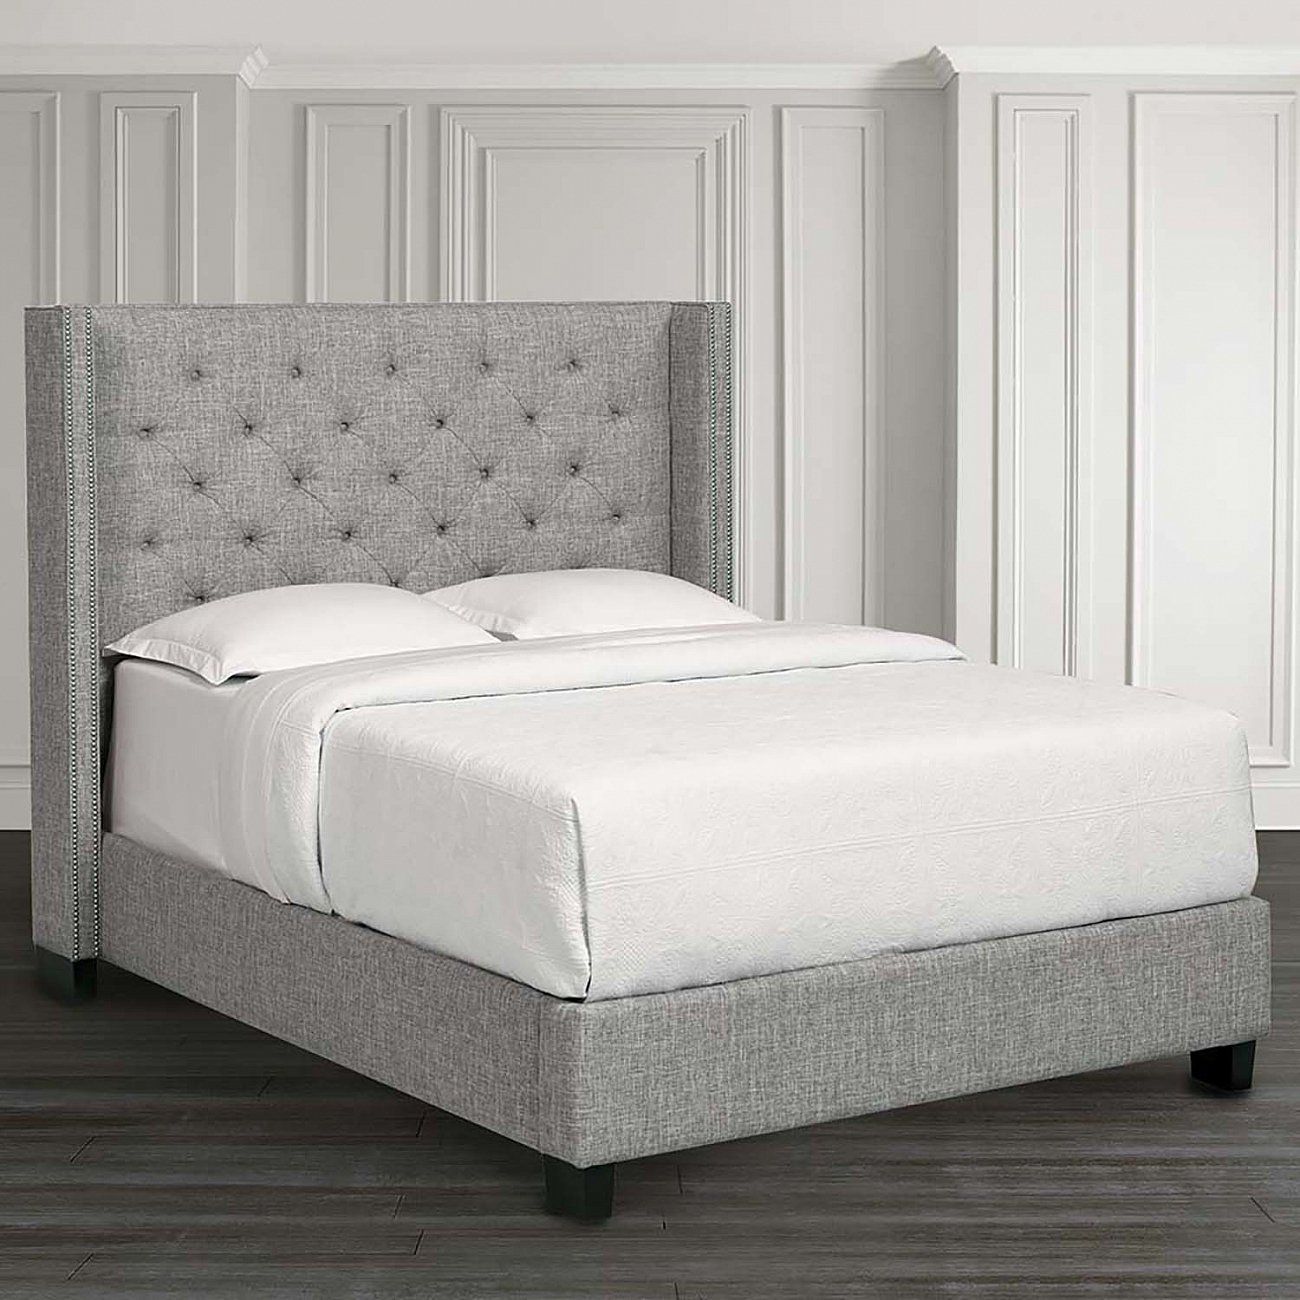 Кровать двуспальная с мягким изголовьем 180х200 см молочная Wing